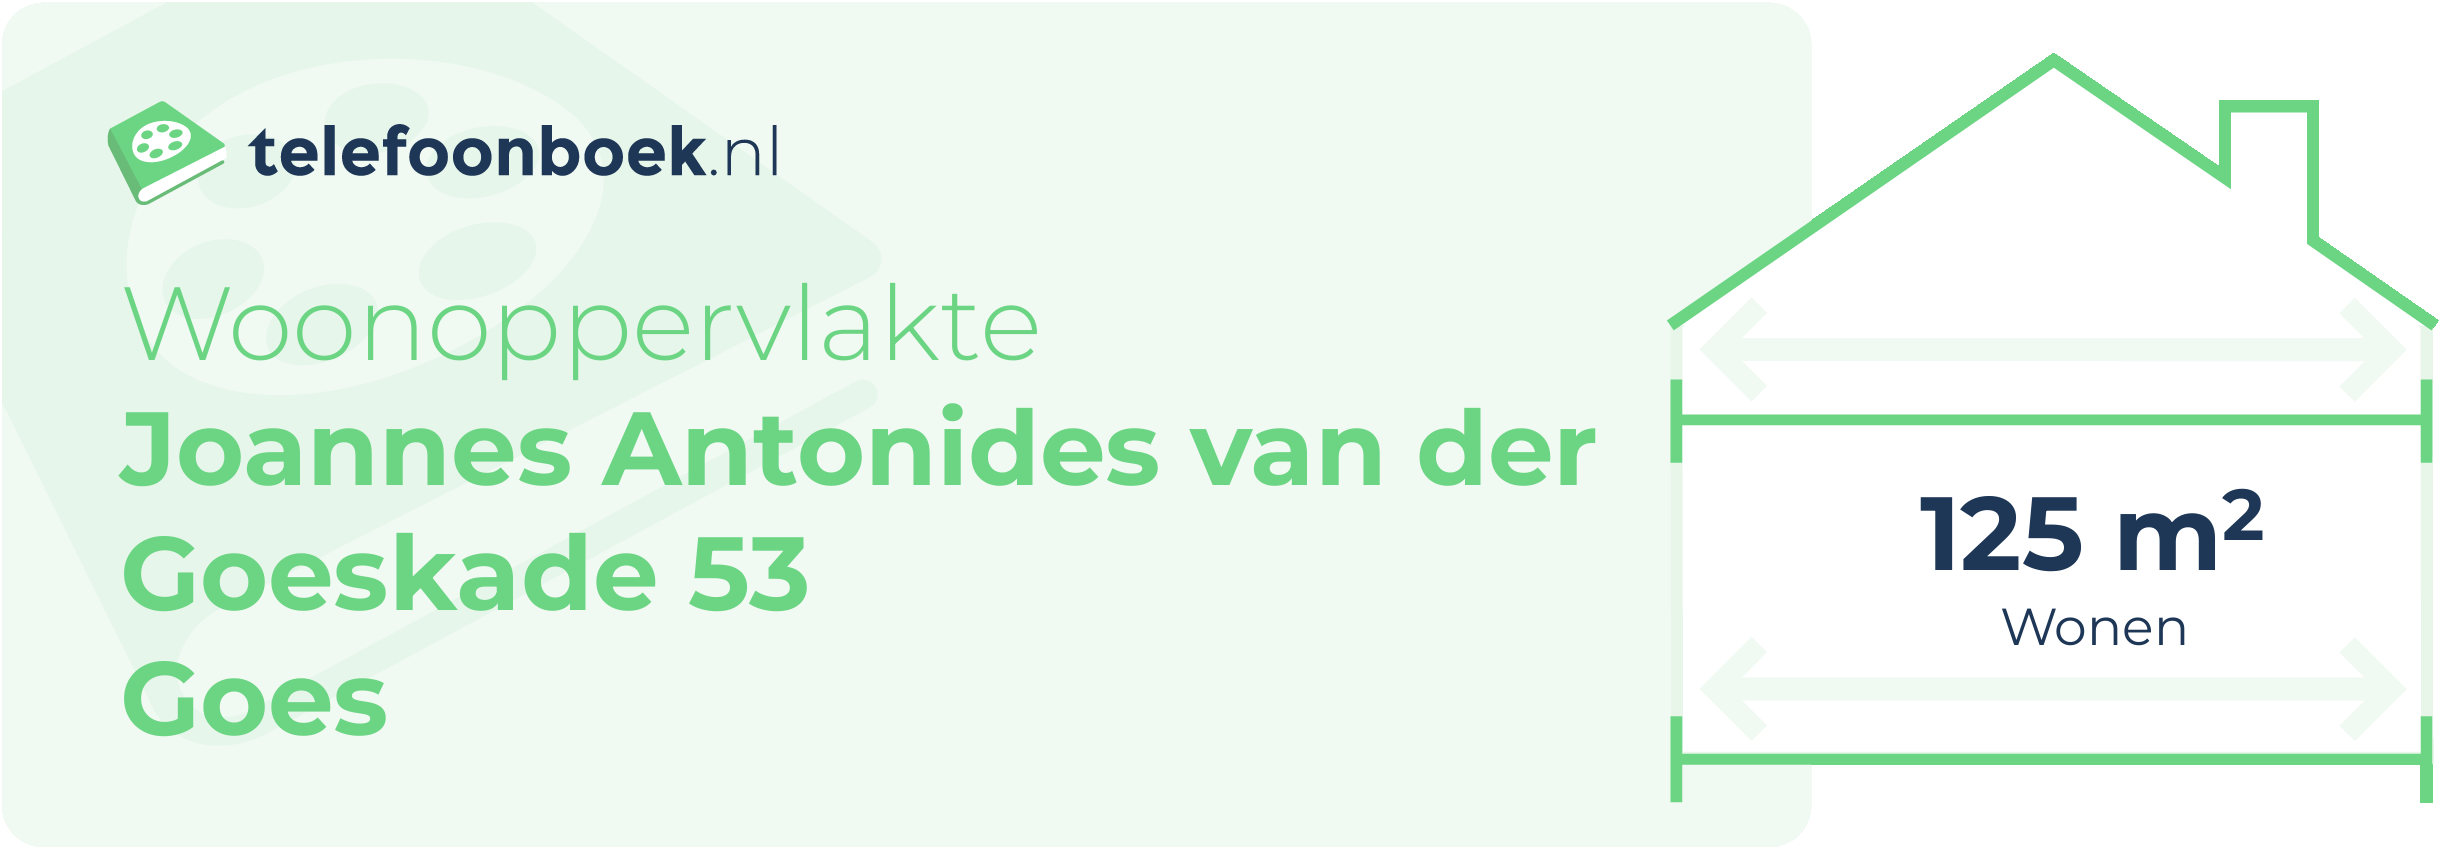 Woonoppervlakte Joannes Antonides Van Der Goeskade 53 Goes